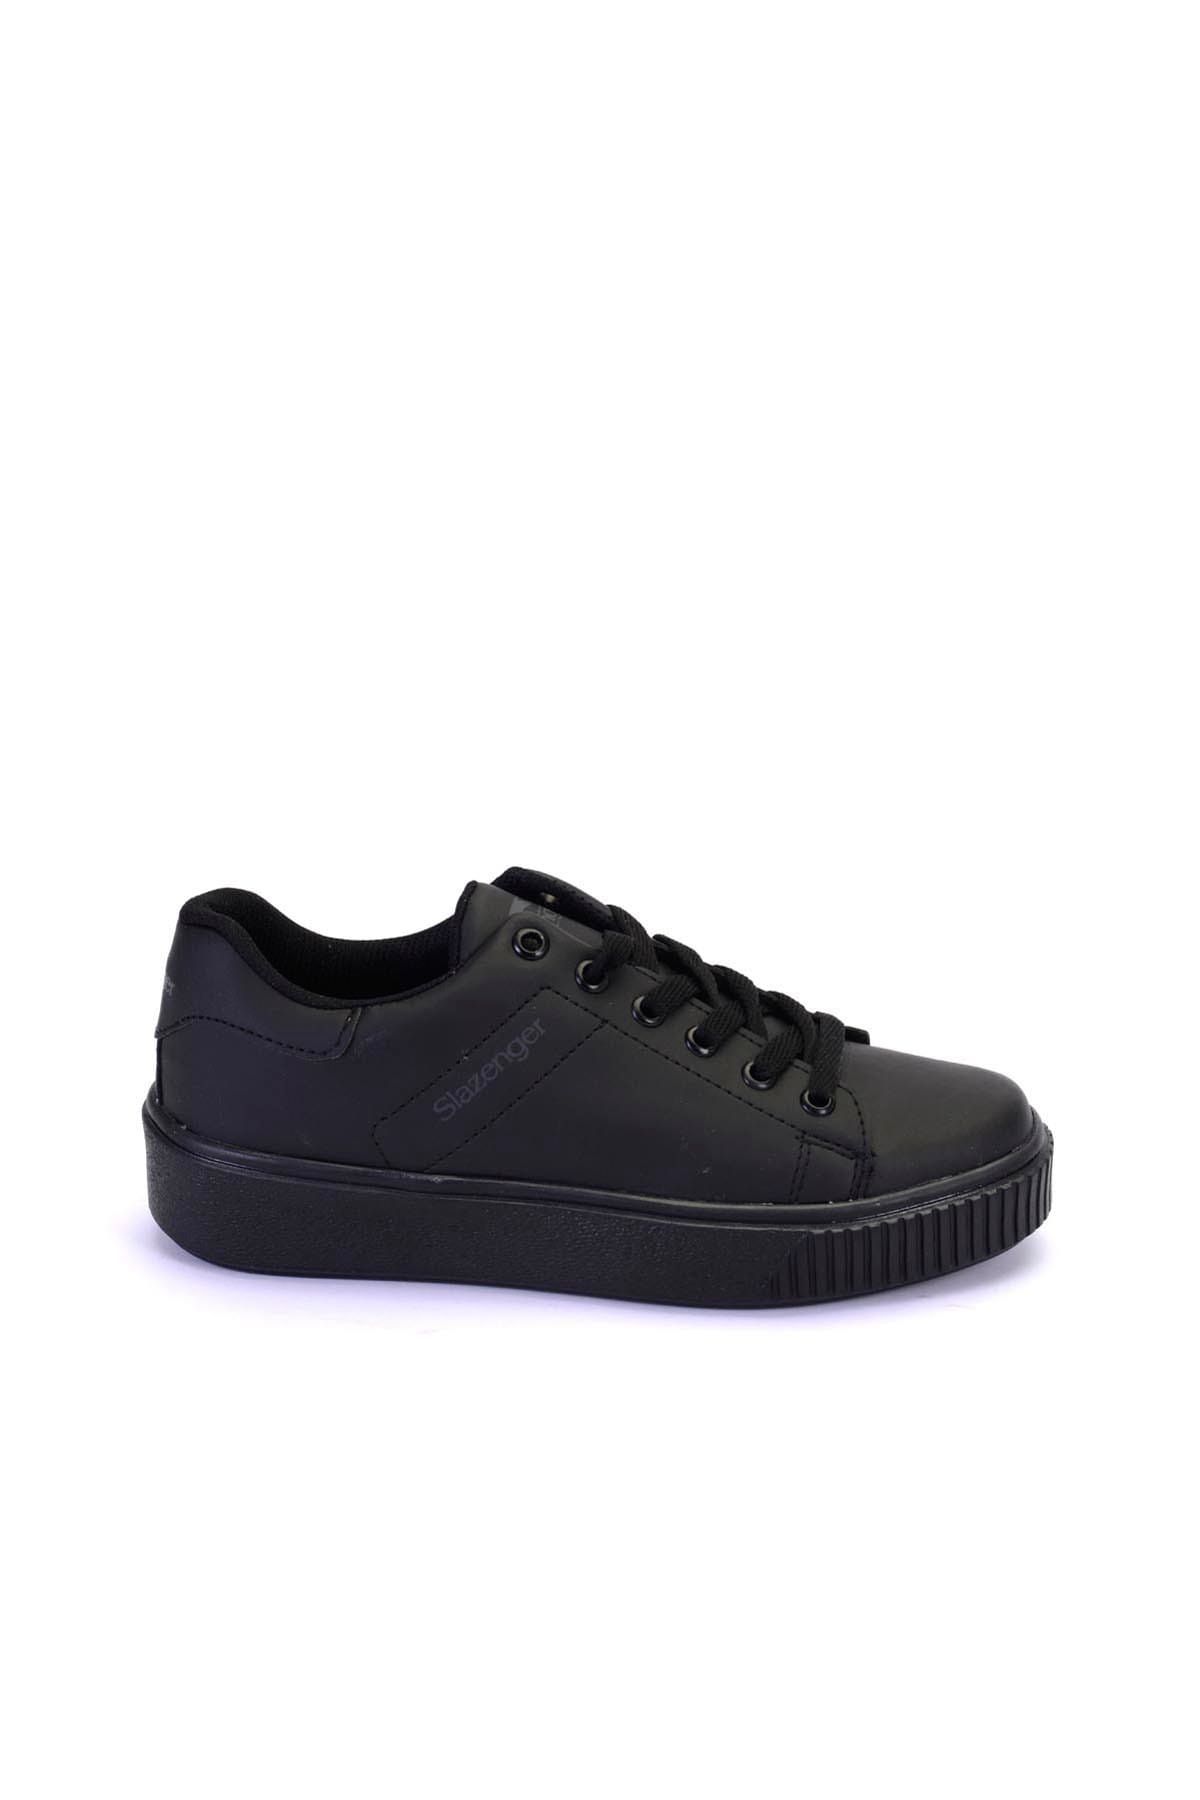 Slazenger Gala Sneaker Kadın Ayakkabı Siyah